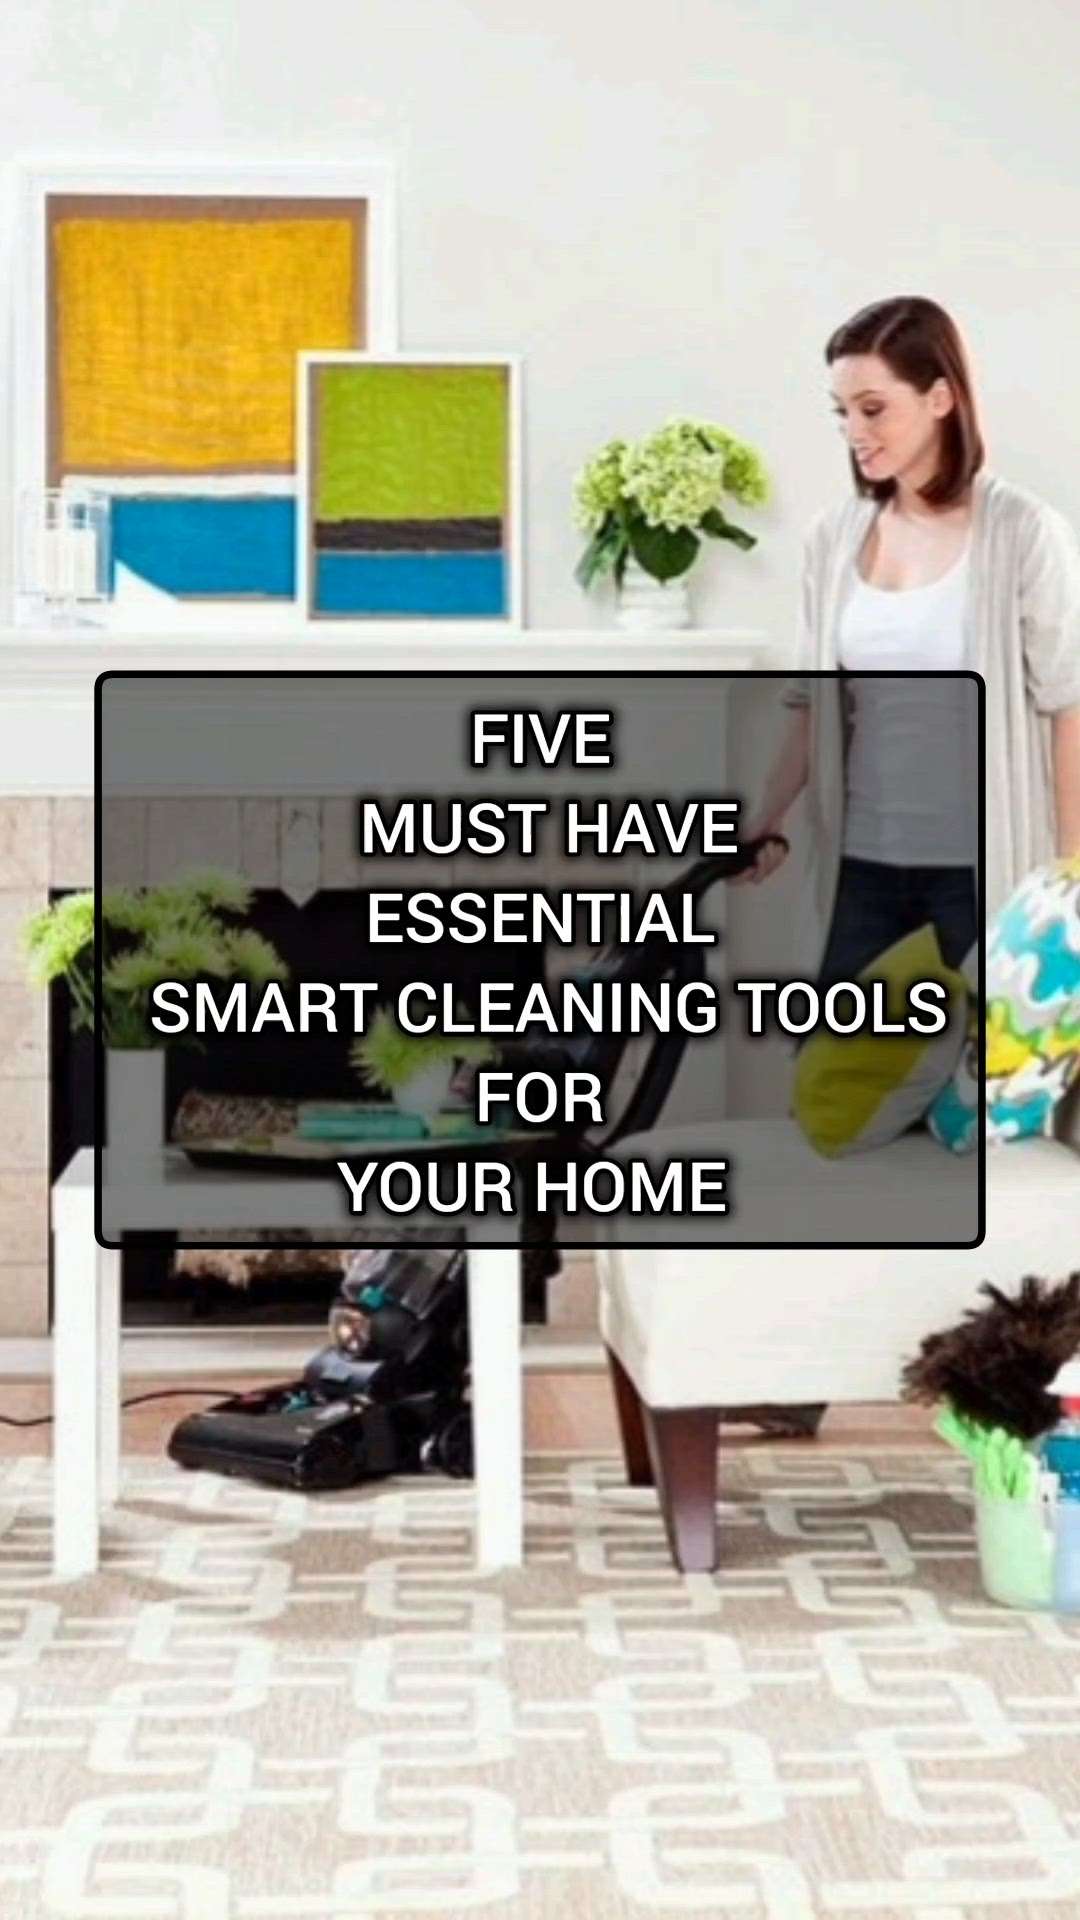 വീട് ഇനി ഈസിയായി ക്ലീൻ ചെയ്യാം! ഈ സ്മാർട്ട്‌ ക്ലീനിങ് ടൂൾസ് ഉപയോഗിച്ച്

Five must have essential cleaning tools for your home

#creatorsofkolo #musthave #home #kitchenideas #modernhomes #ideas #essentials